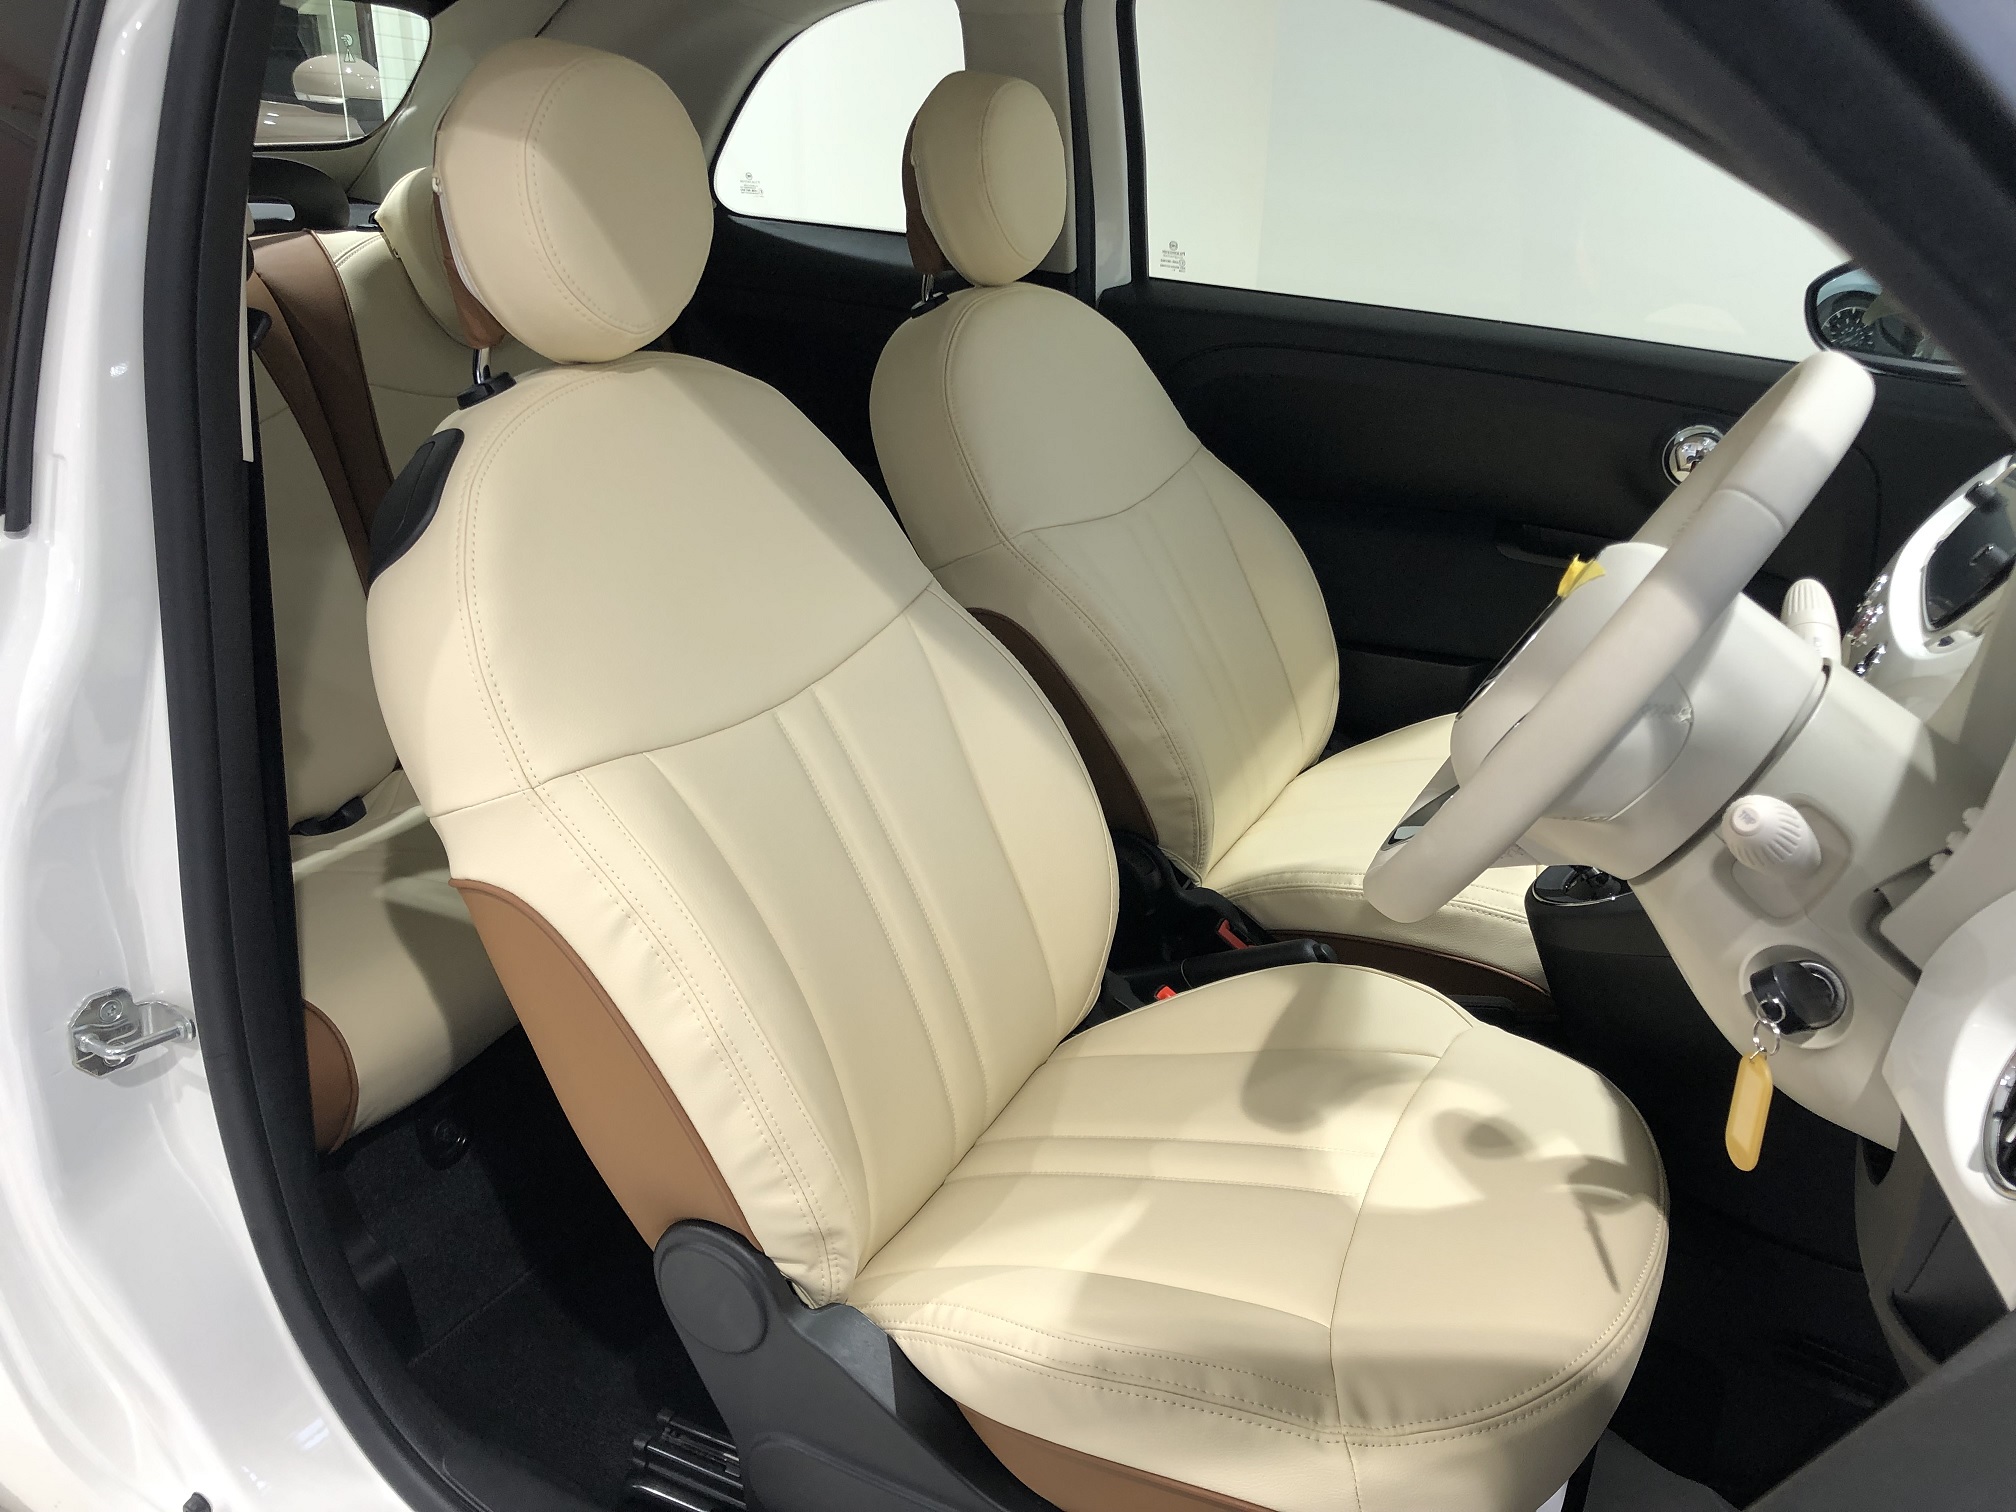 エレガンテ(elegante) カスタム(custom) シートカバー(seatcover) スタンダード・シート PVC leather 白(ivory) 500／500C／500S CABANA(カバナ) フィアット(FIAT) コンバーチブル(convertible) ポップ(POP)